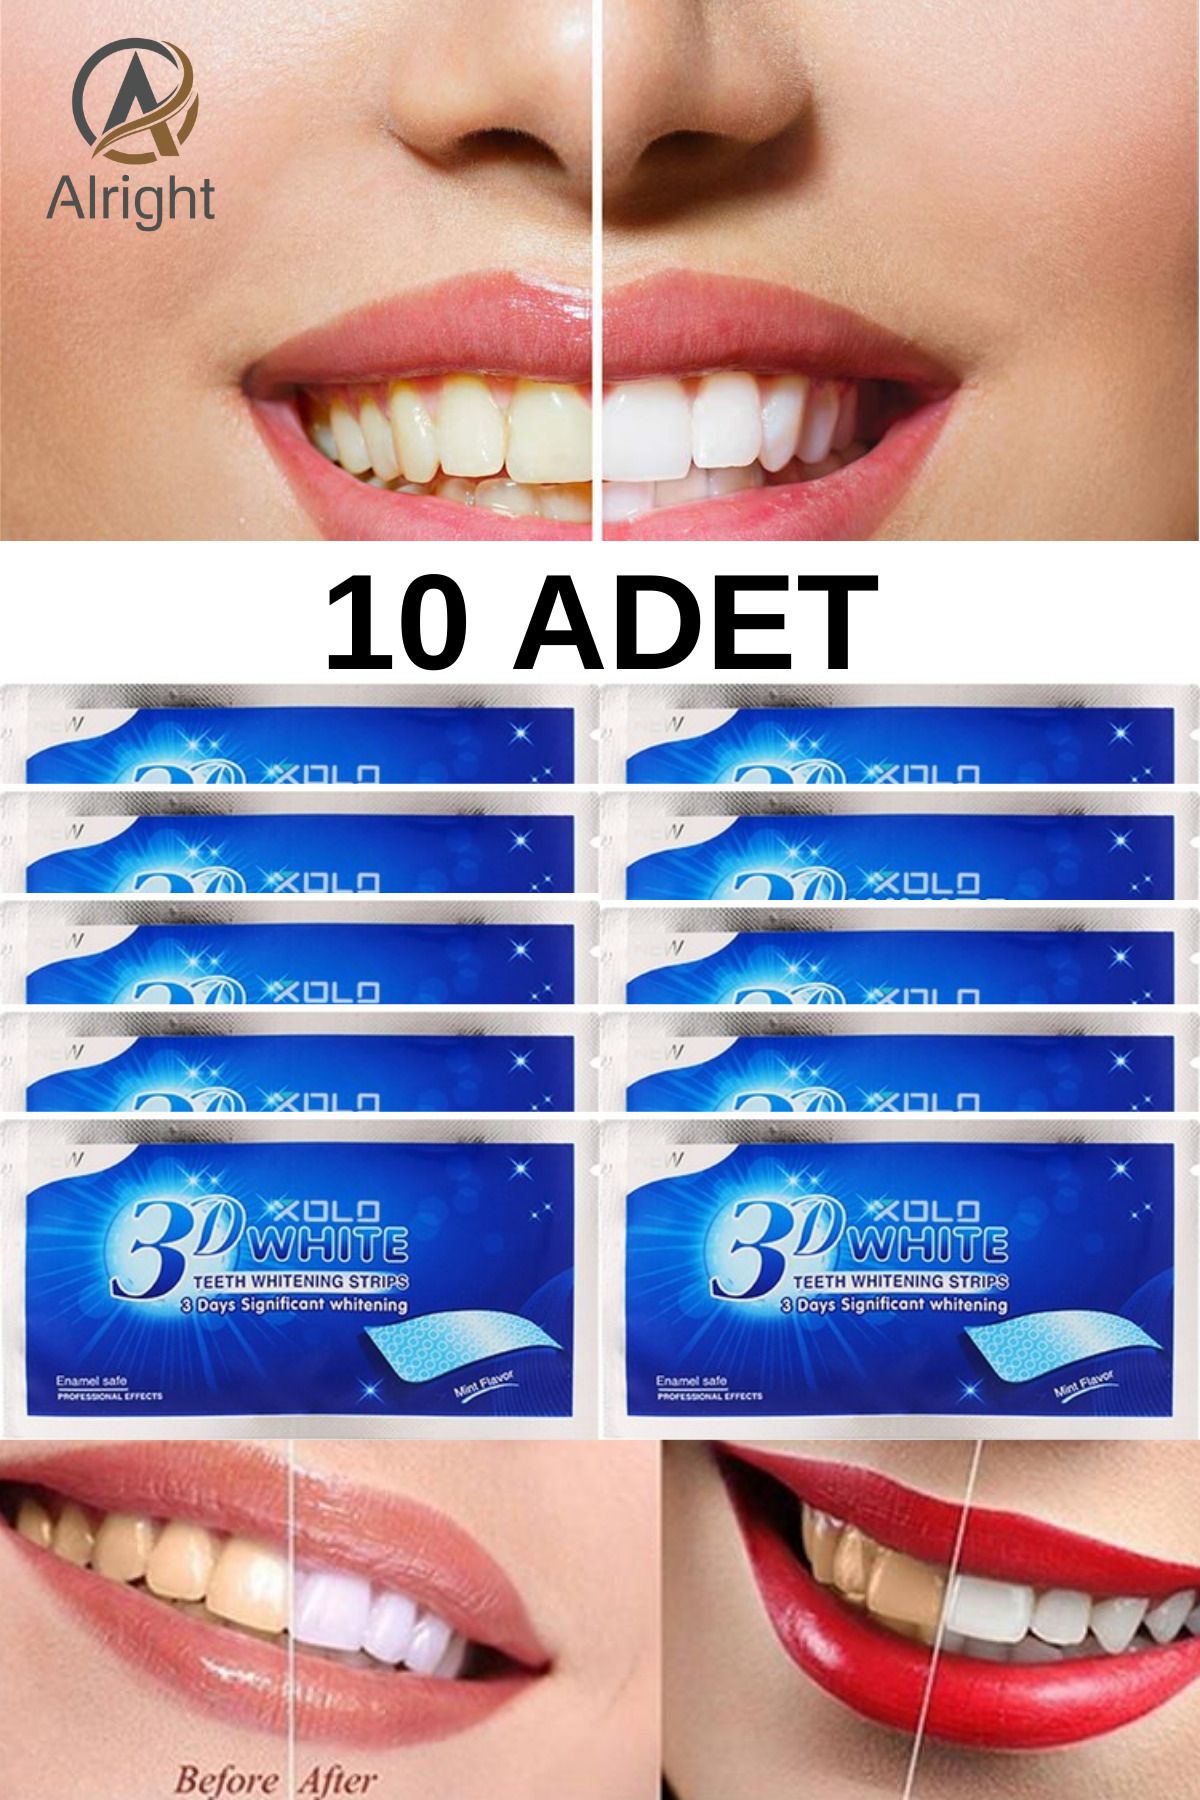 Alright 3D White 10 Adet Diş Beyazlatma Bandı Anında Beyazlama (Teeth Whitening Strip)